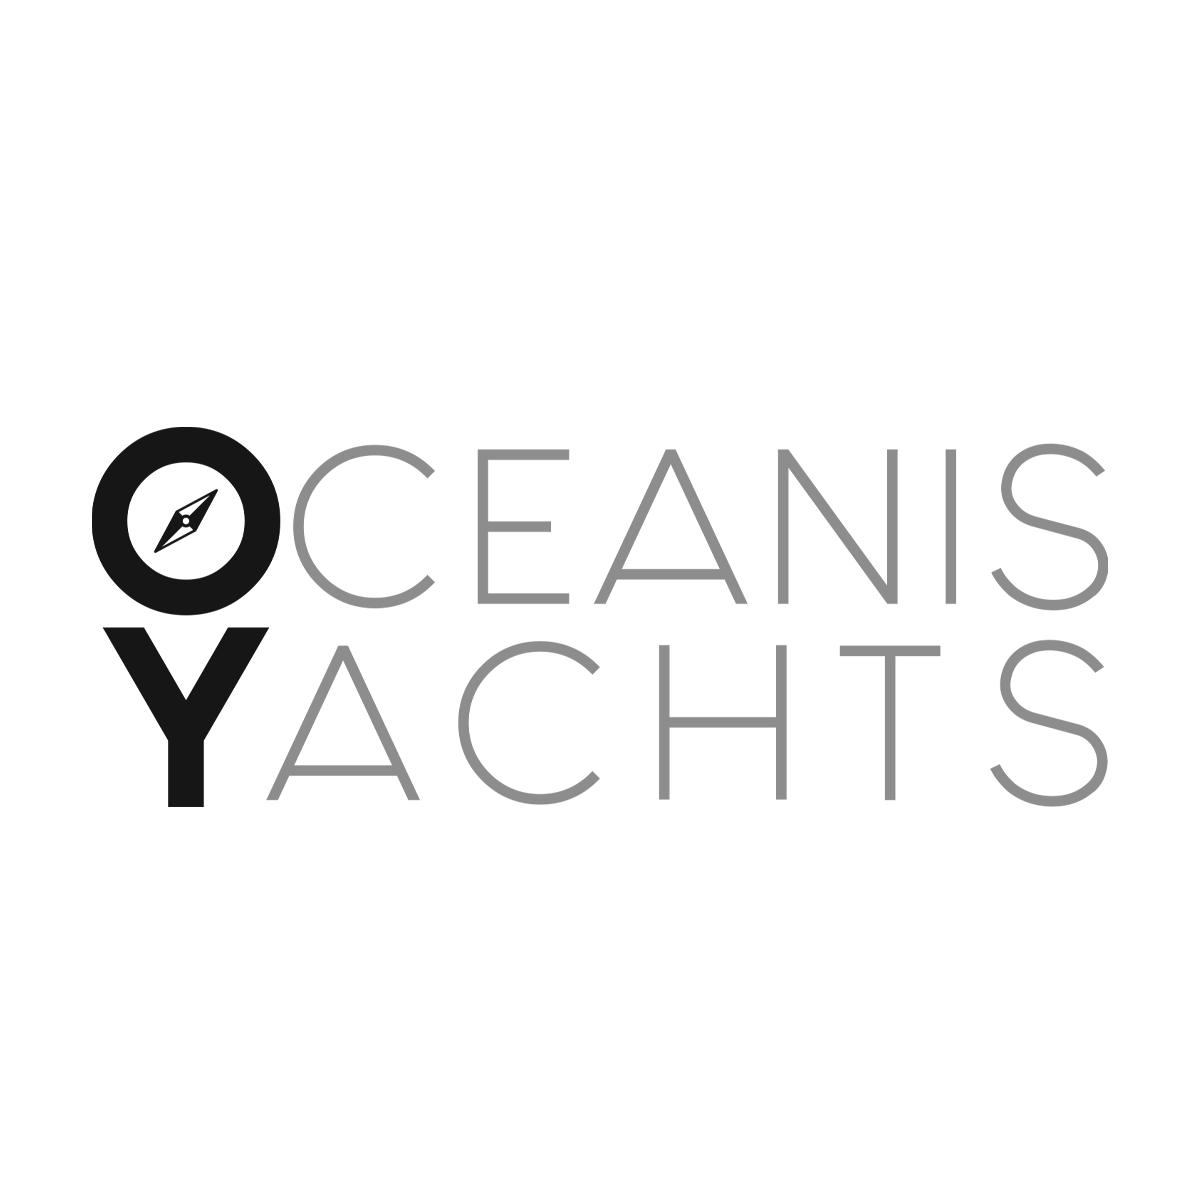 Oceanis Yachts